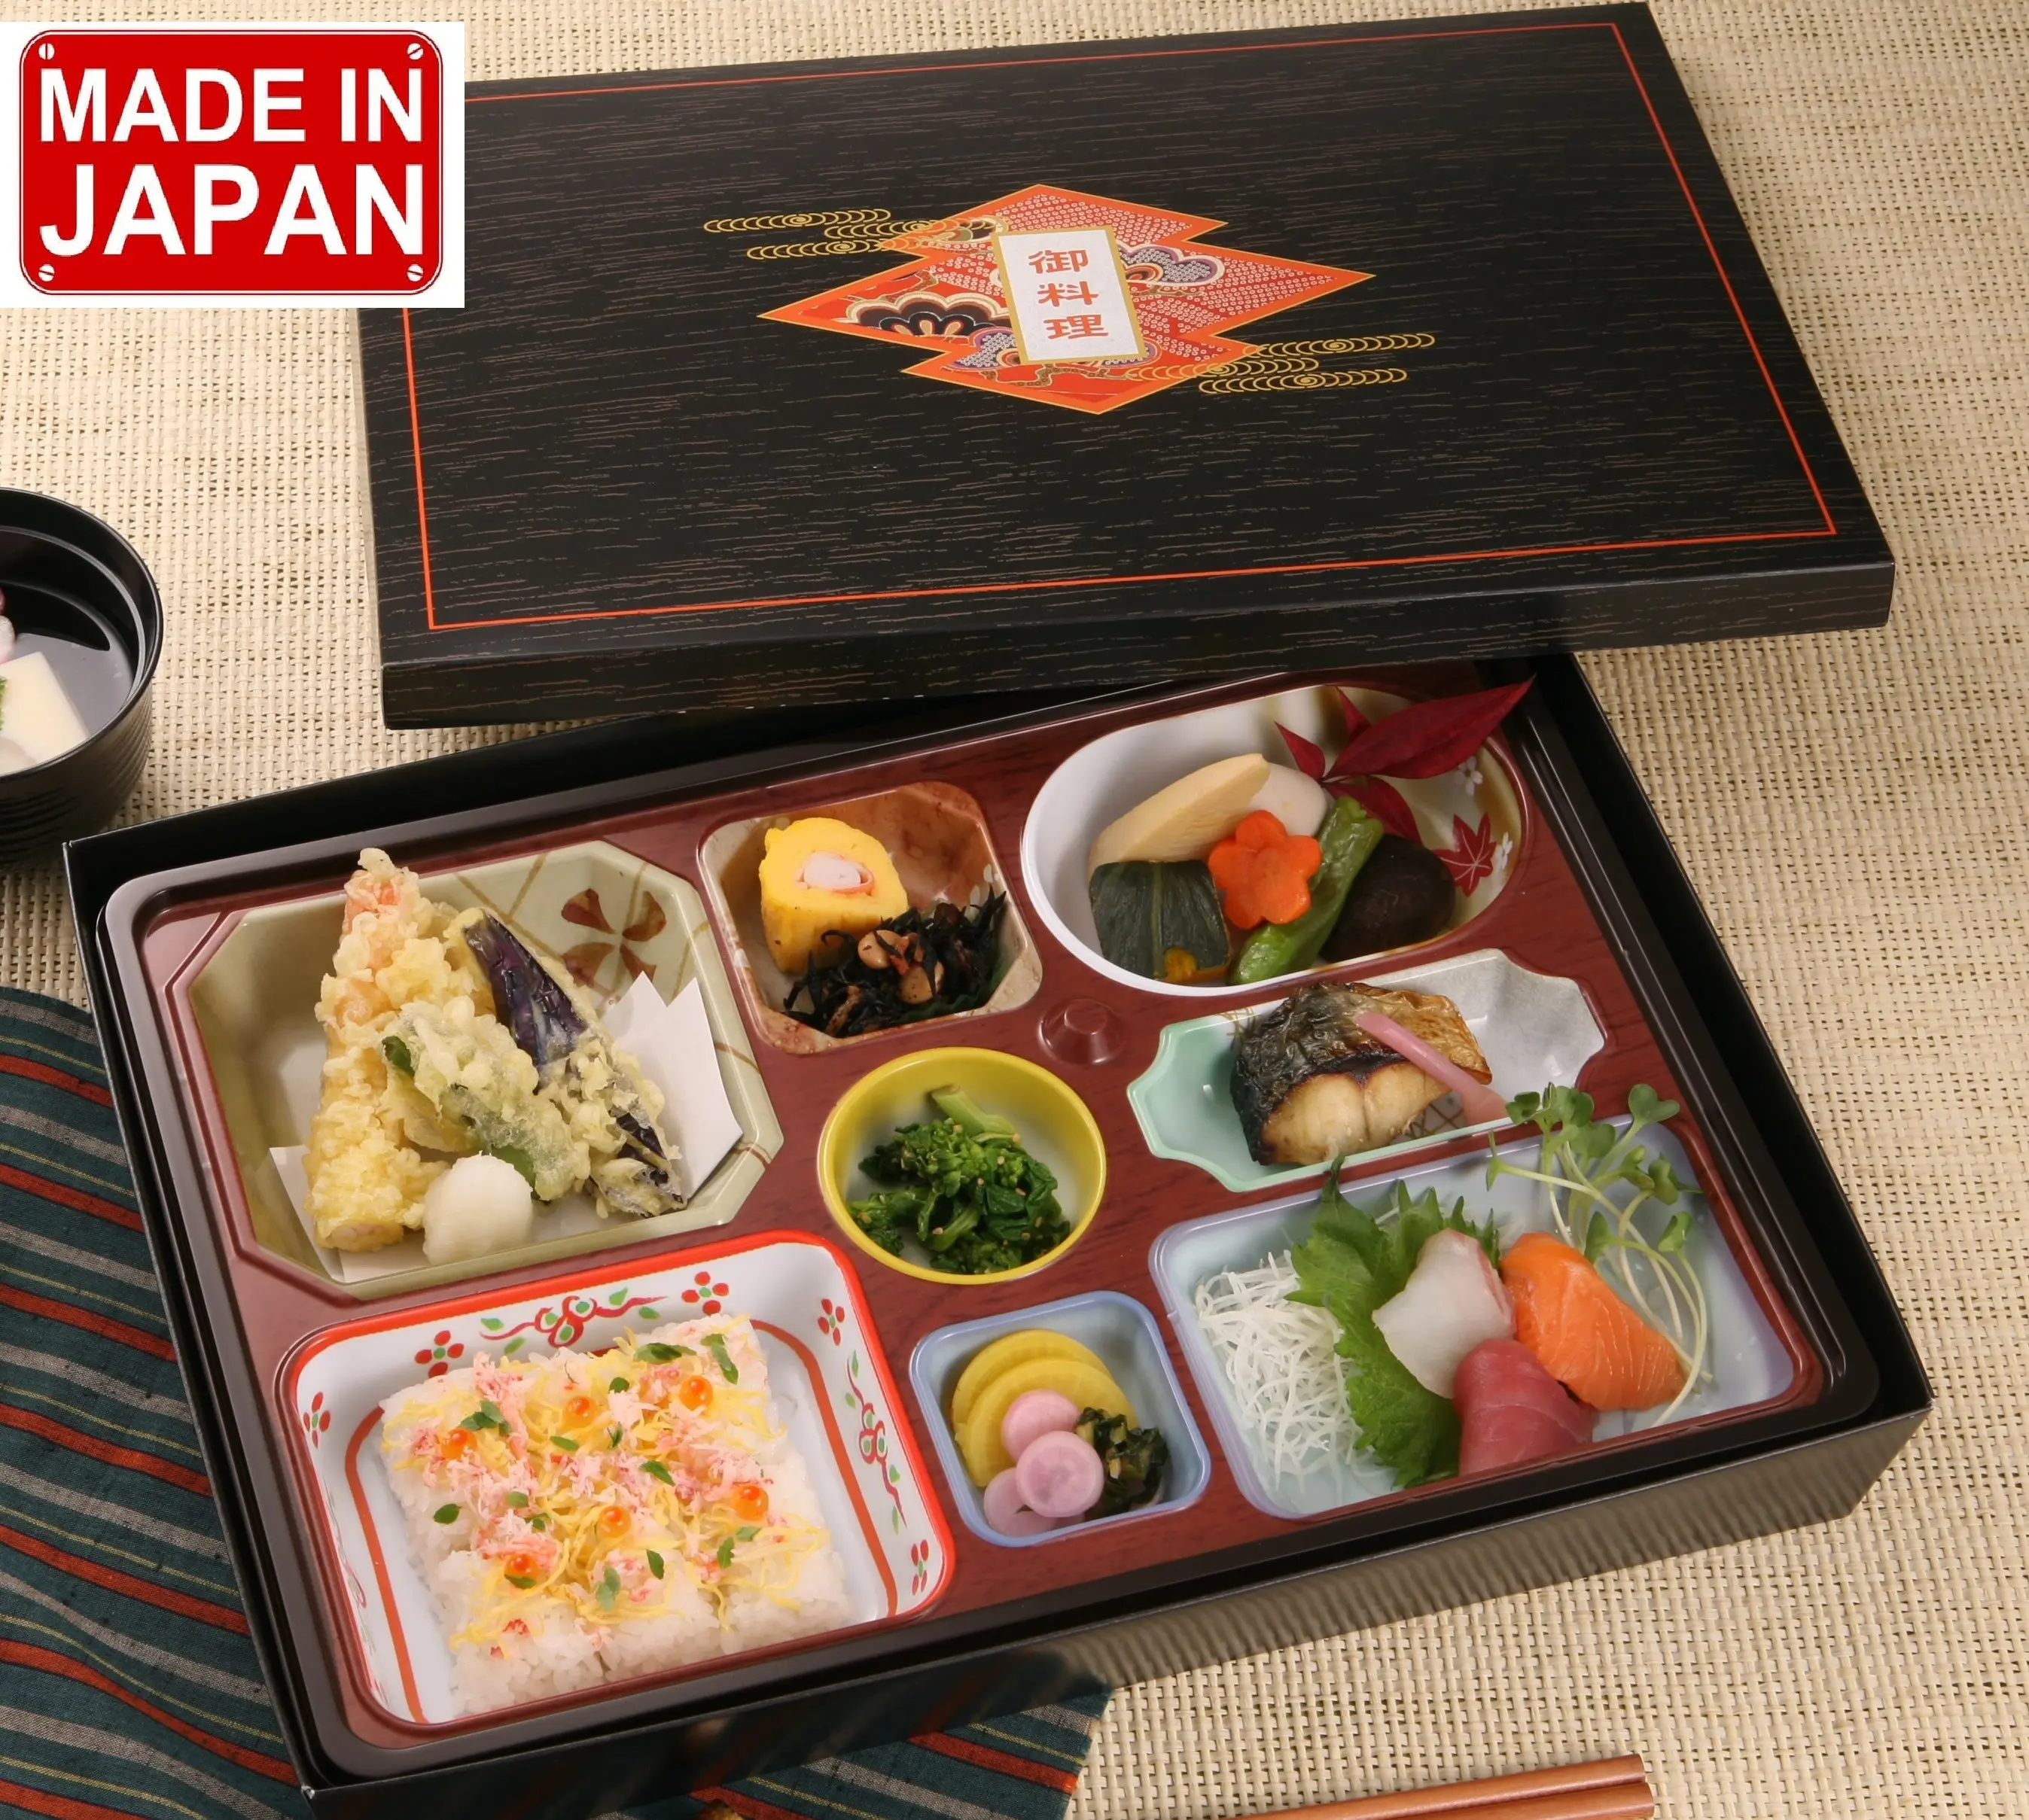 持ち帰り用紙使い捨て日本の弁当箱環境にやさしい寿司箱